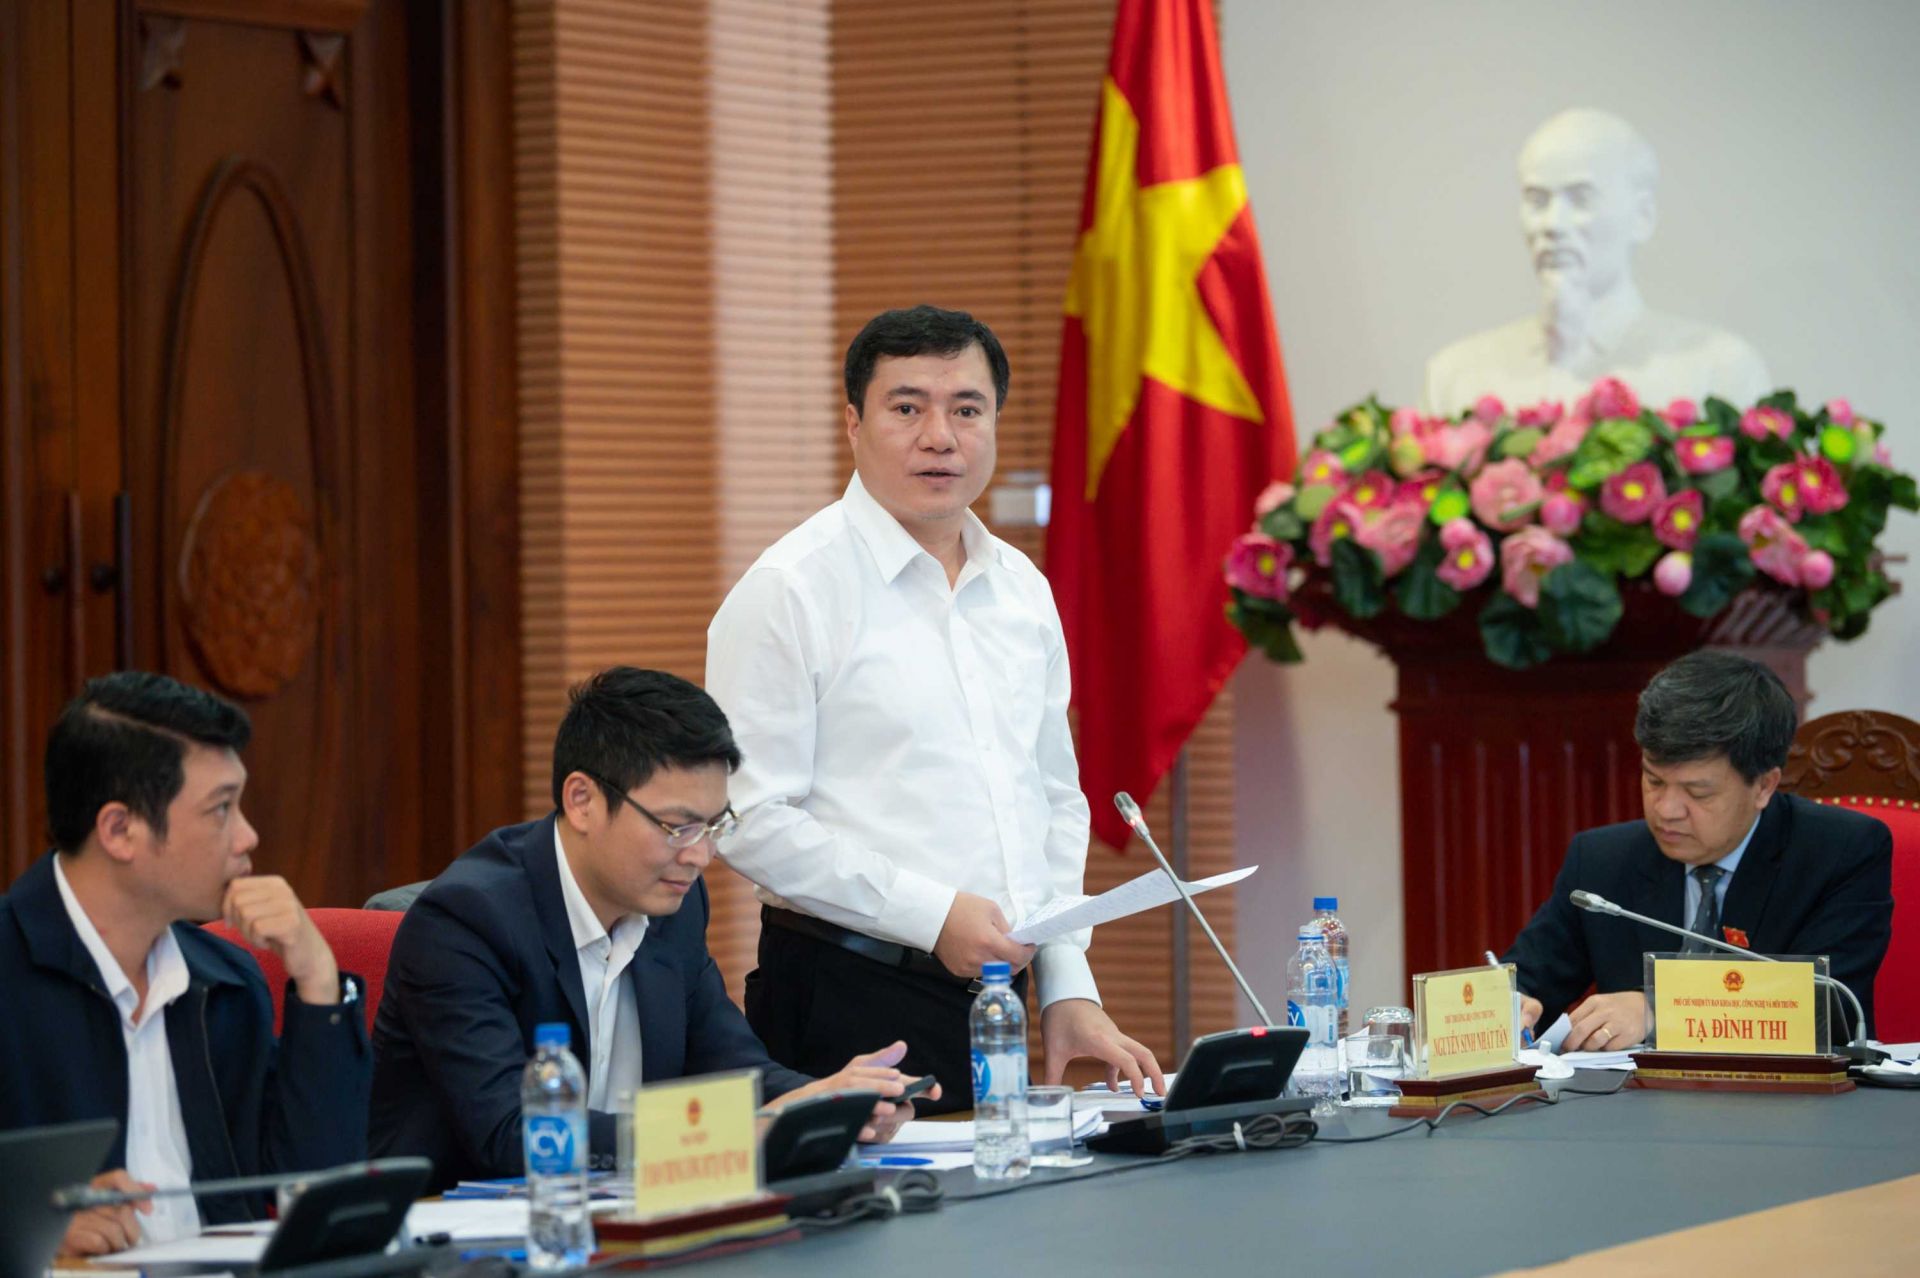 Thứ trưởng Bộ Công Thương Nguyễn Sinh Nhật Tân làm rõ một số nội dung trong Dự án Luật Bảo vệ quyền lợi người tiêu dùng (sửa đổi) tại Hội thảo Lấy ý kiến hoàn thiện Dự án Luật